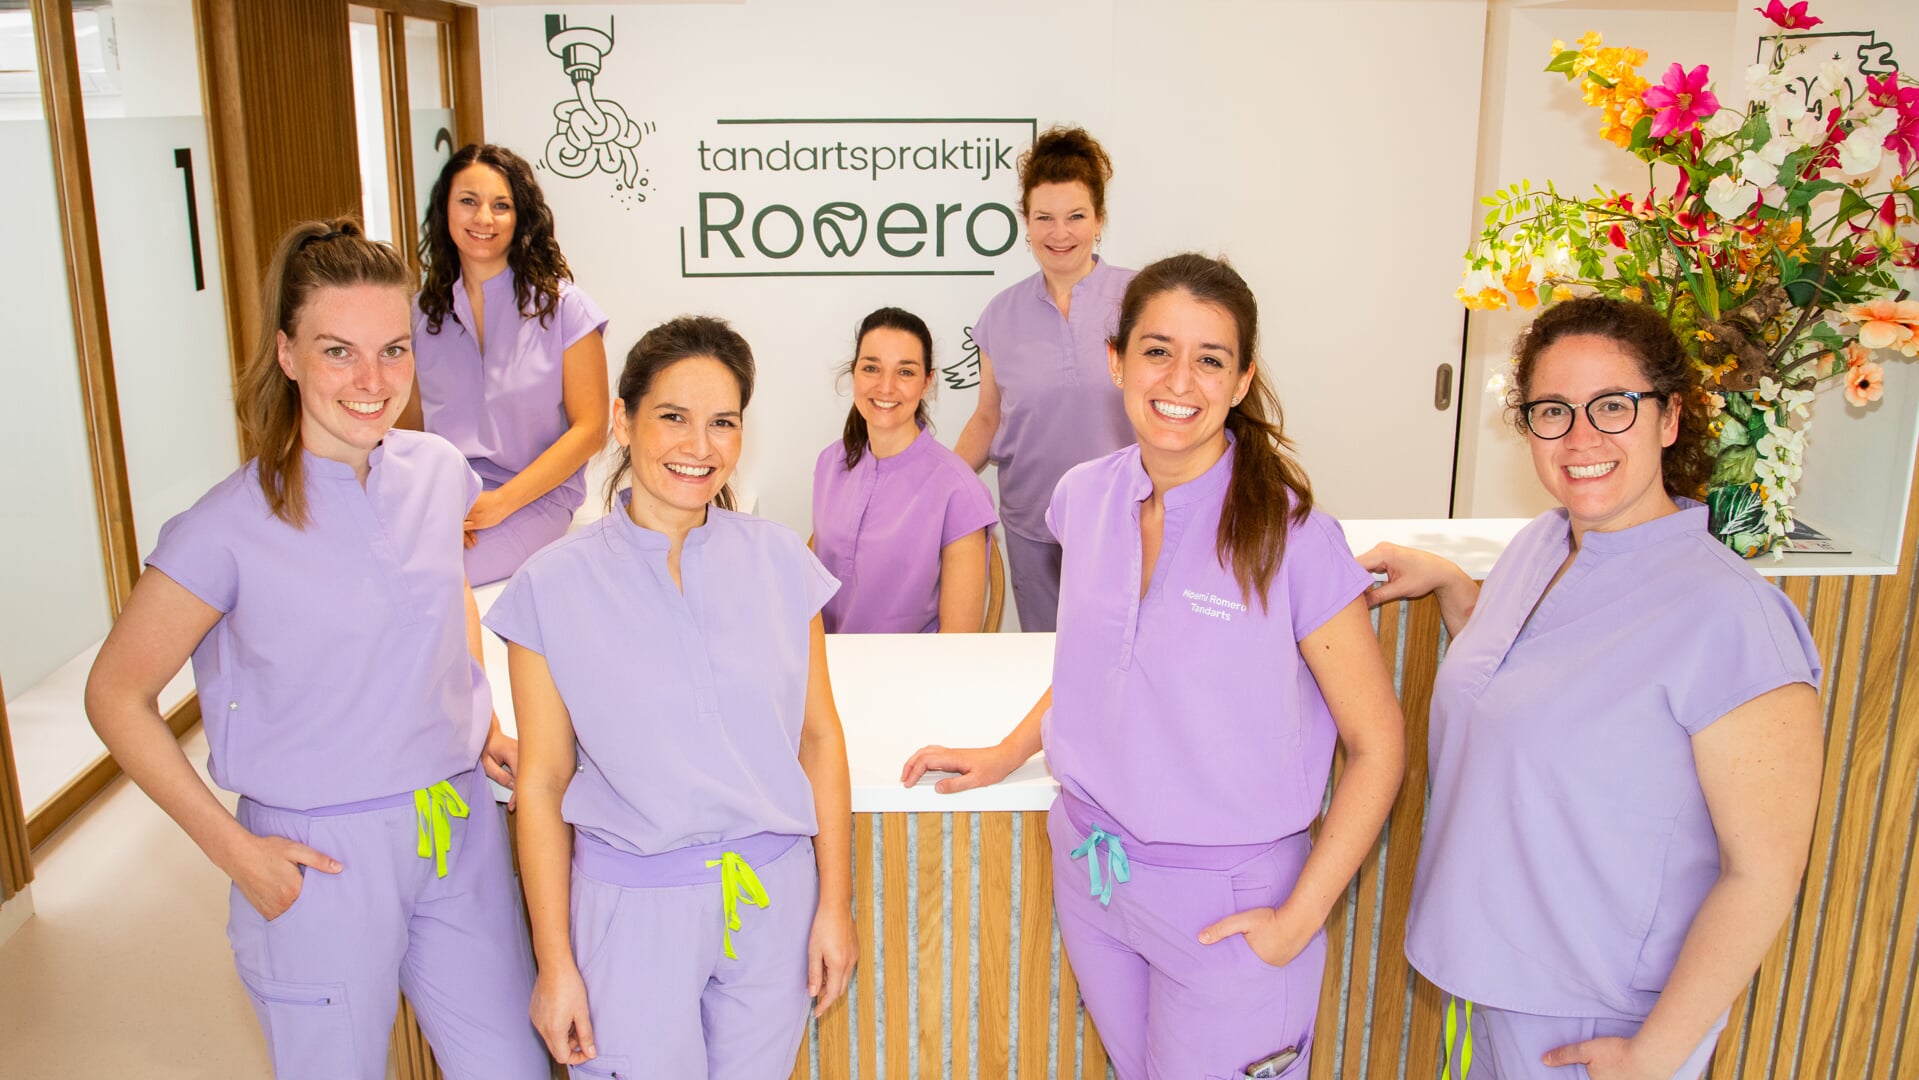 Van orthodontist en implantoloog tot mondhygiënisten; bij Romero vind je alle expertise onder één dak. Tweede van rechts: Noemi Romero Torrijos.